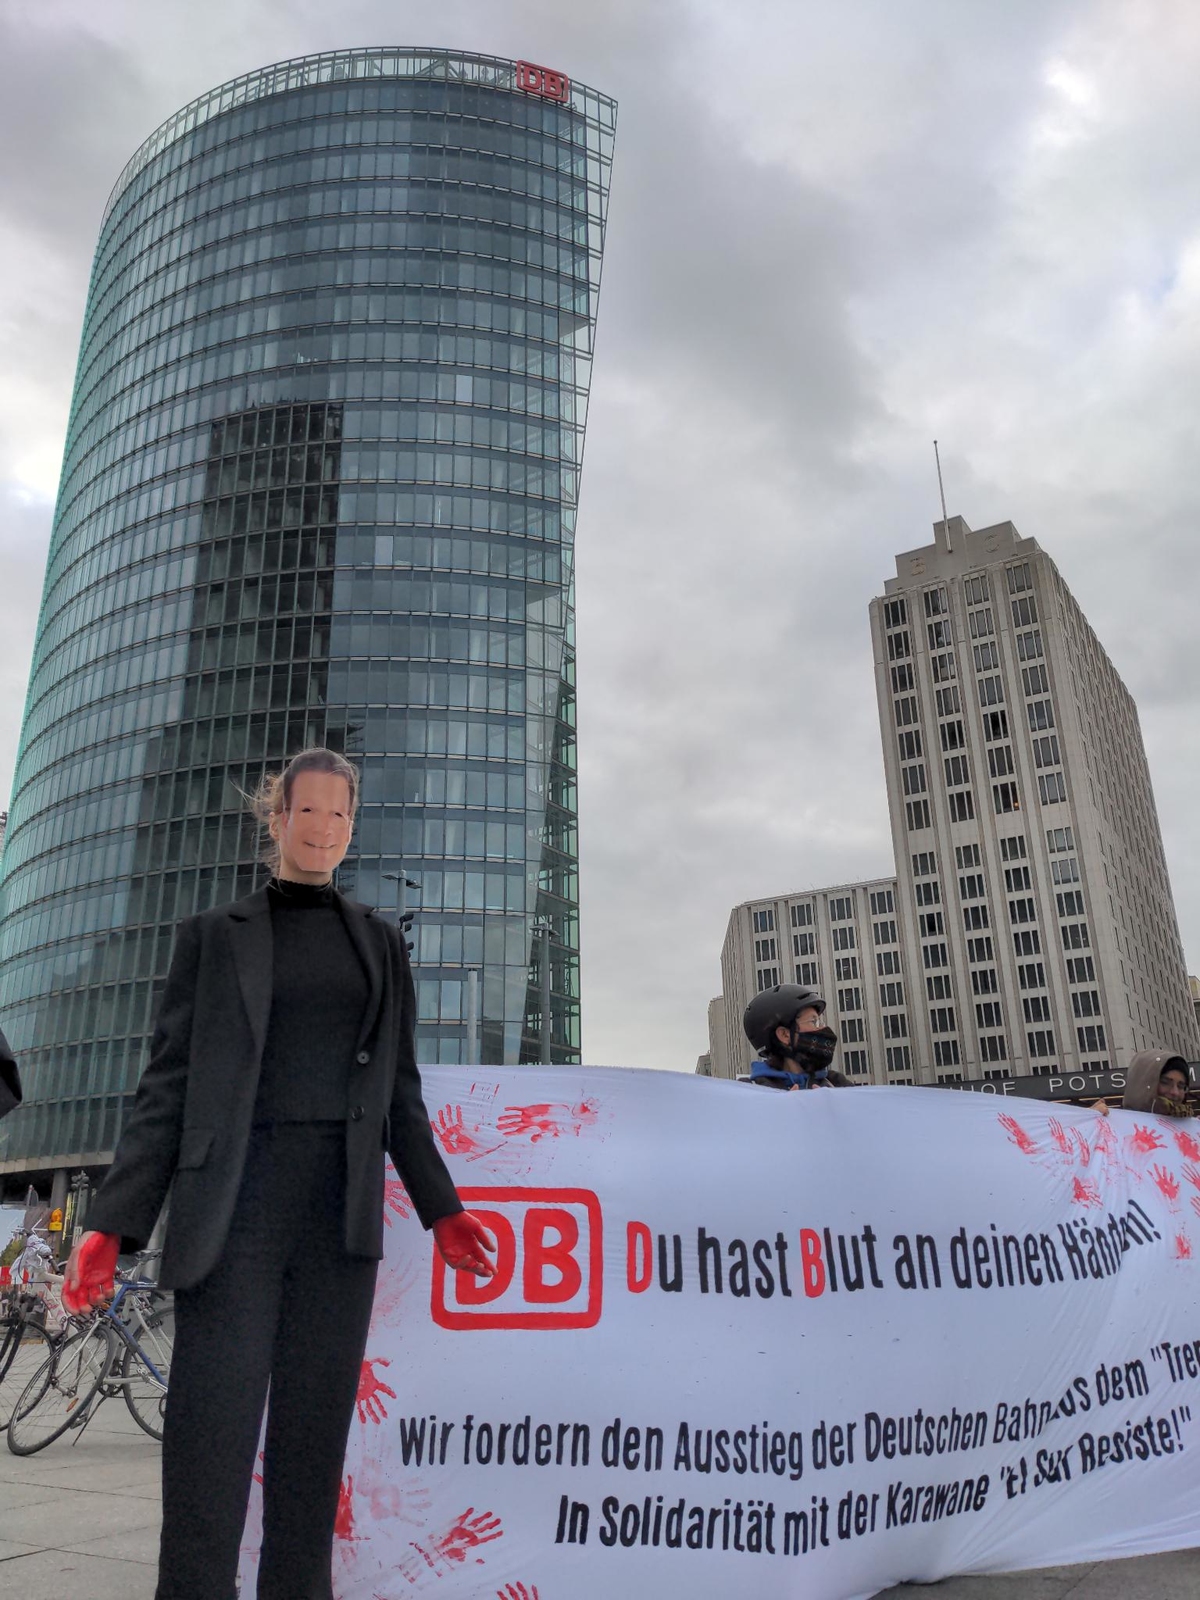 Die Karawane wird auch von Solidaritätsaktionen in Deutschland begleitet – Protest vor dem Bahntower am Potsdamer Platz in Berlin